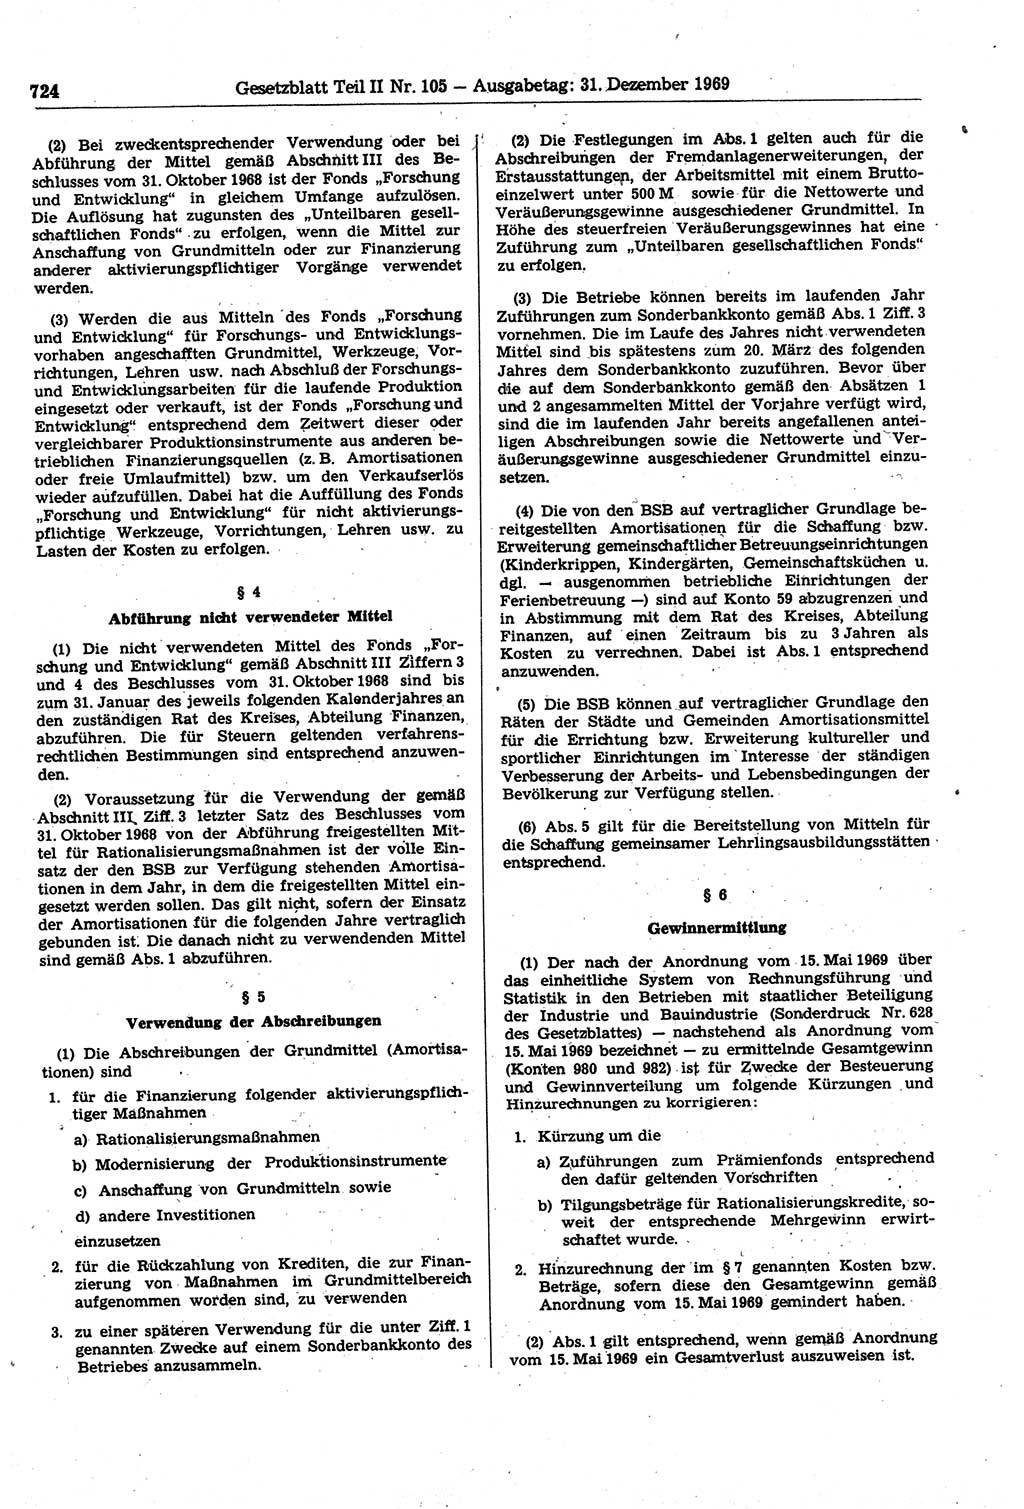 Gesetzblatt (GBl.) der Deutschen Demokratischen Republik (DDR) Teil ⅠⅠ 1969, Seite 724 (GBl. DDR ⅠⅠ 1969, S. 724)